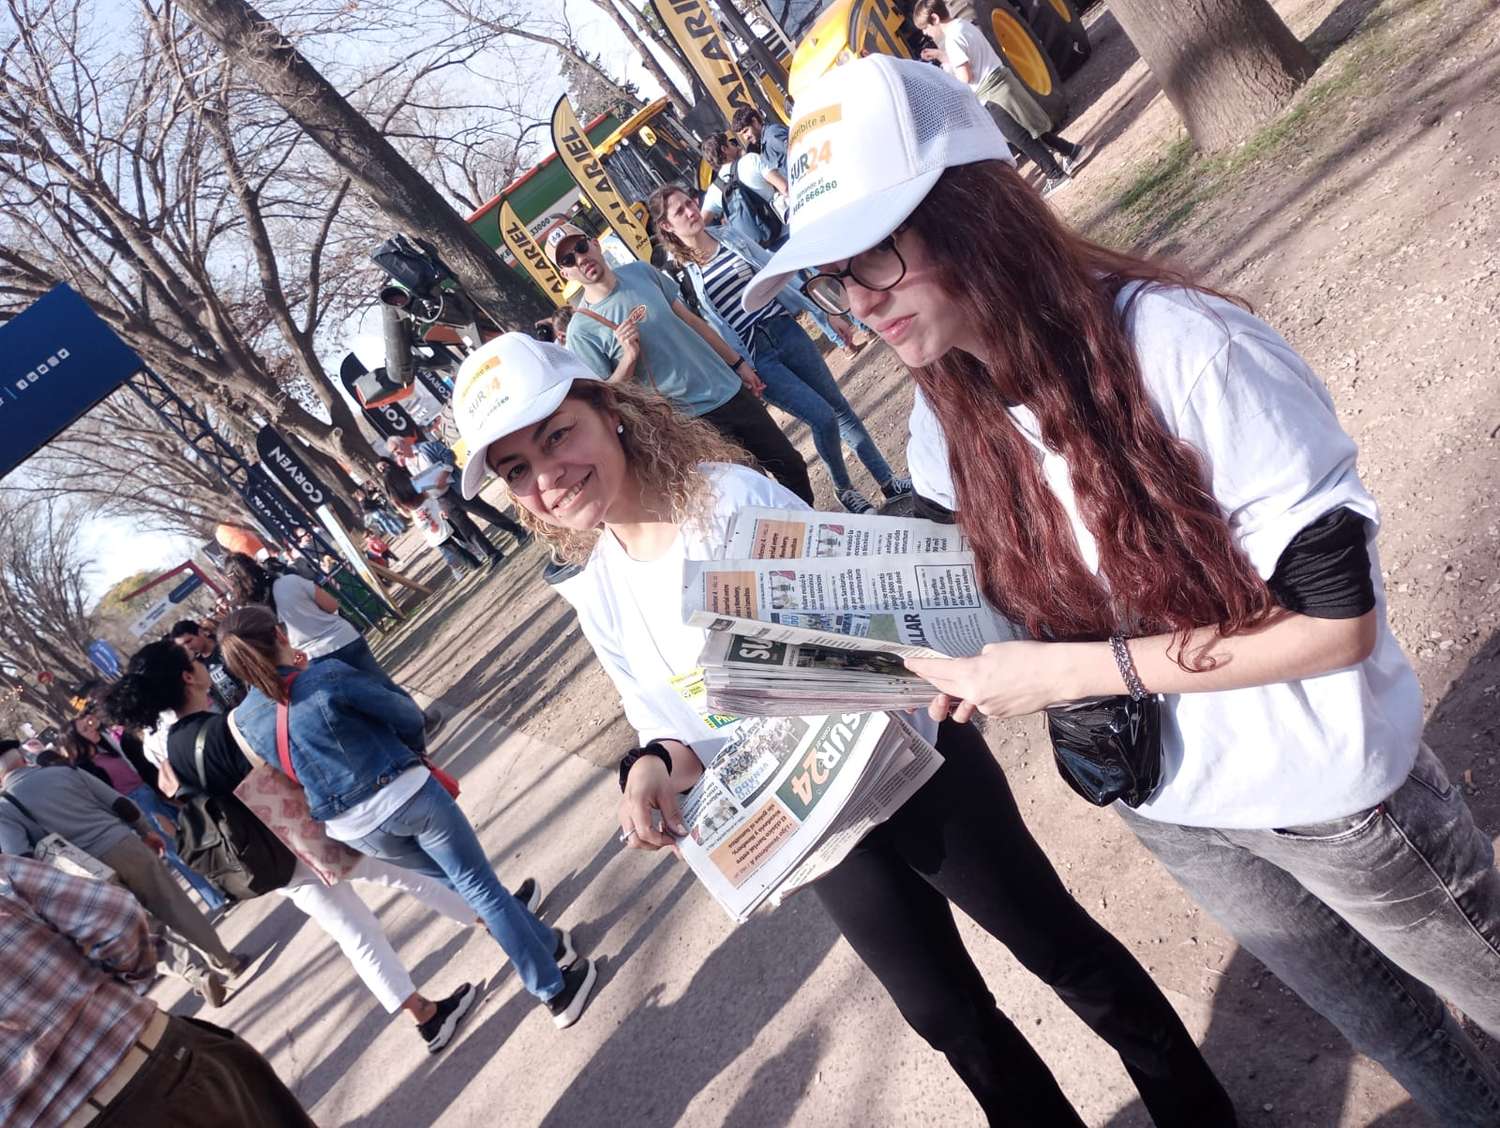 Colaboradores de Sur24 distribuyeron cientos de ejemplares entre la multitud en la tarde del lunes.